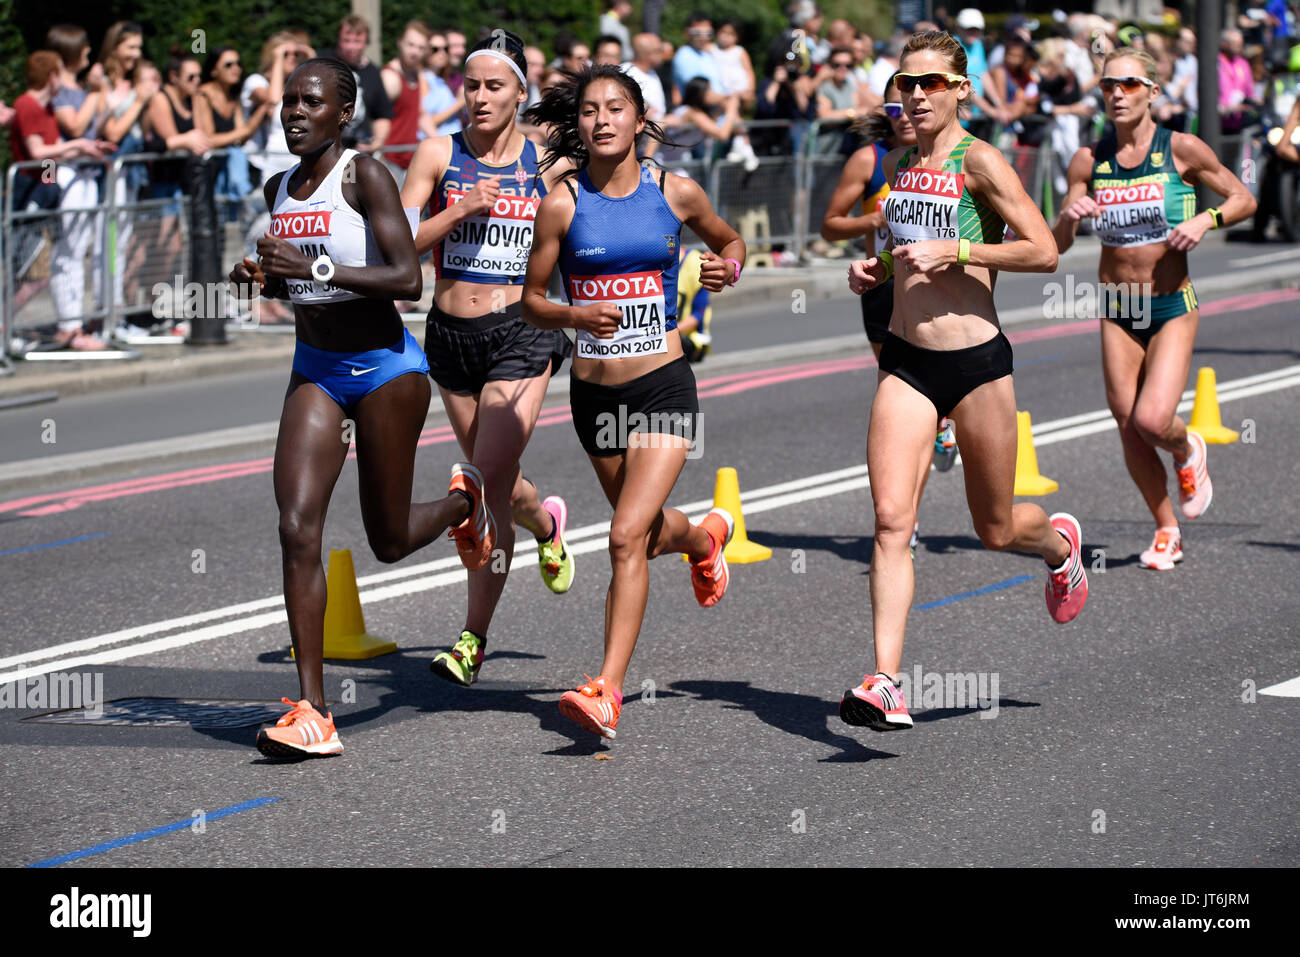 Mujeres atletas que corren en el Campeonato Mundial de la IAAF 2017 Maratón carrera en Londres, Reino Unido Foto de stock